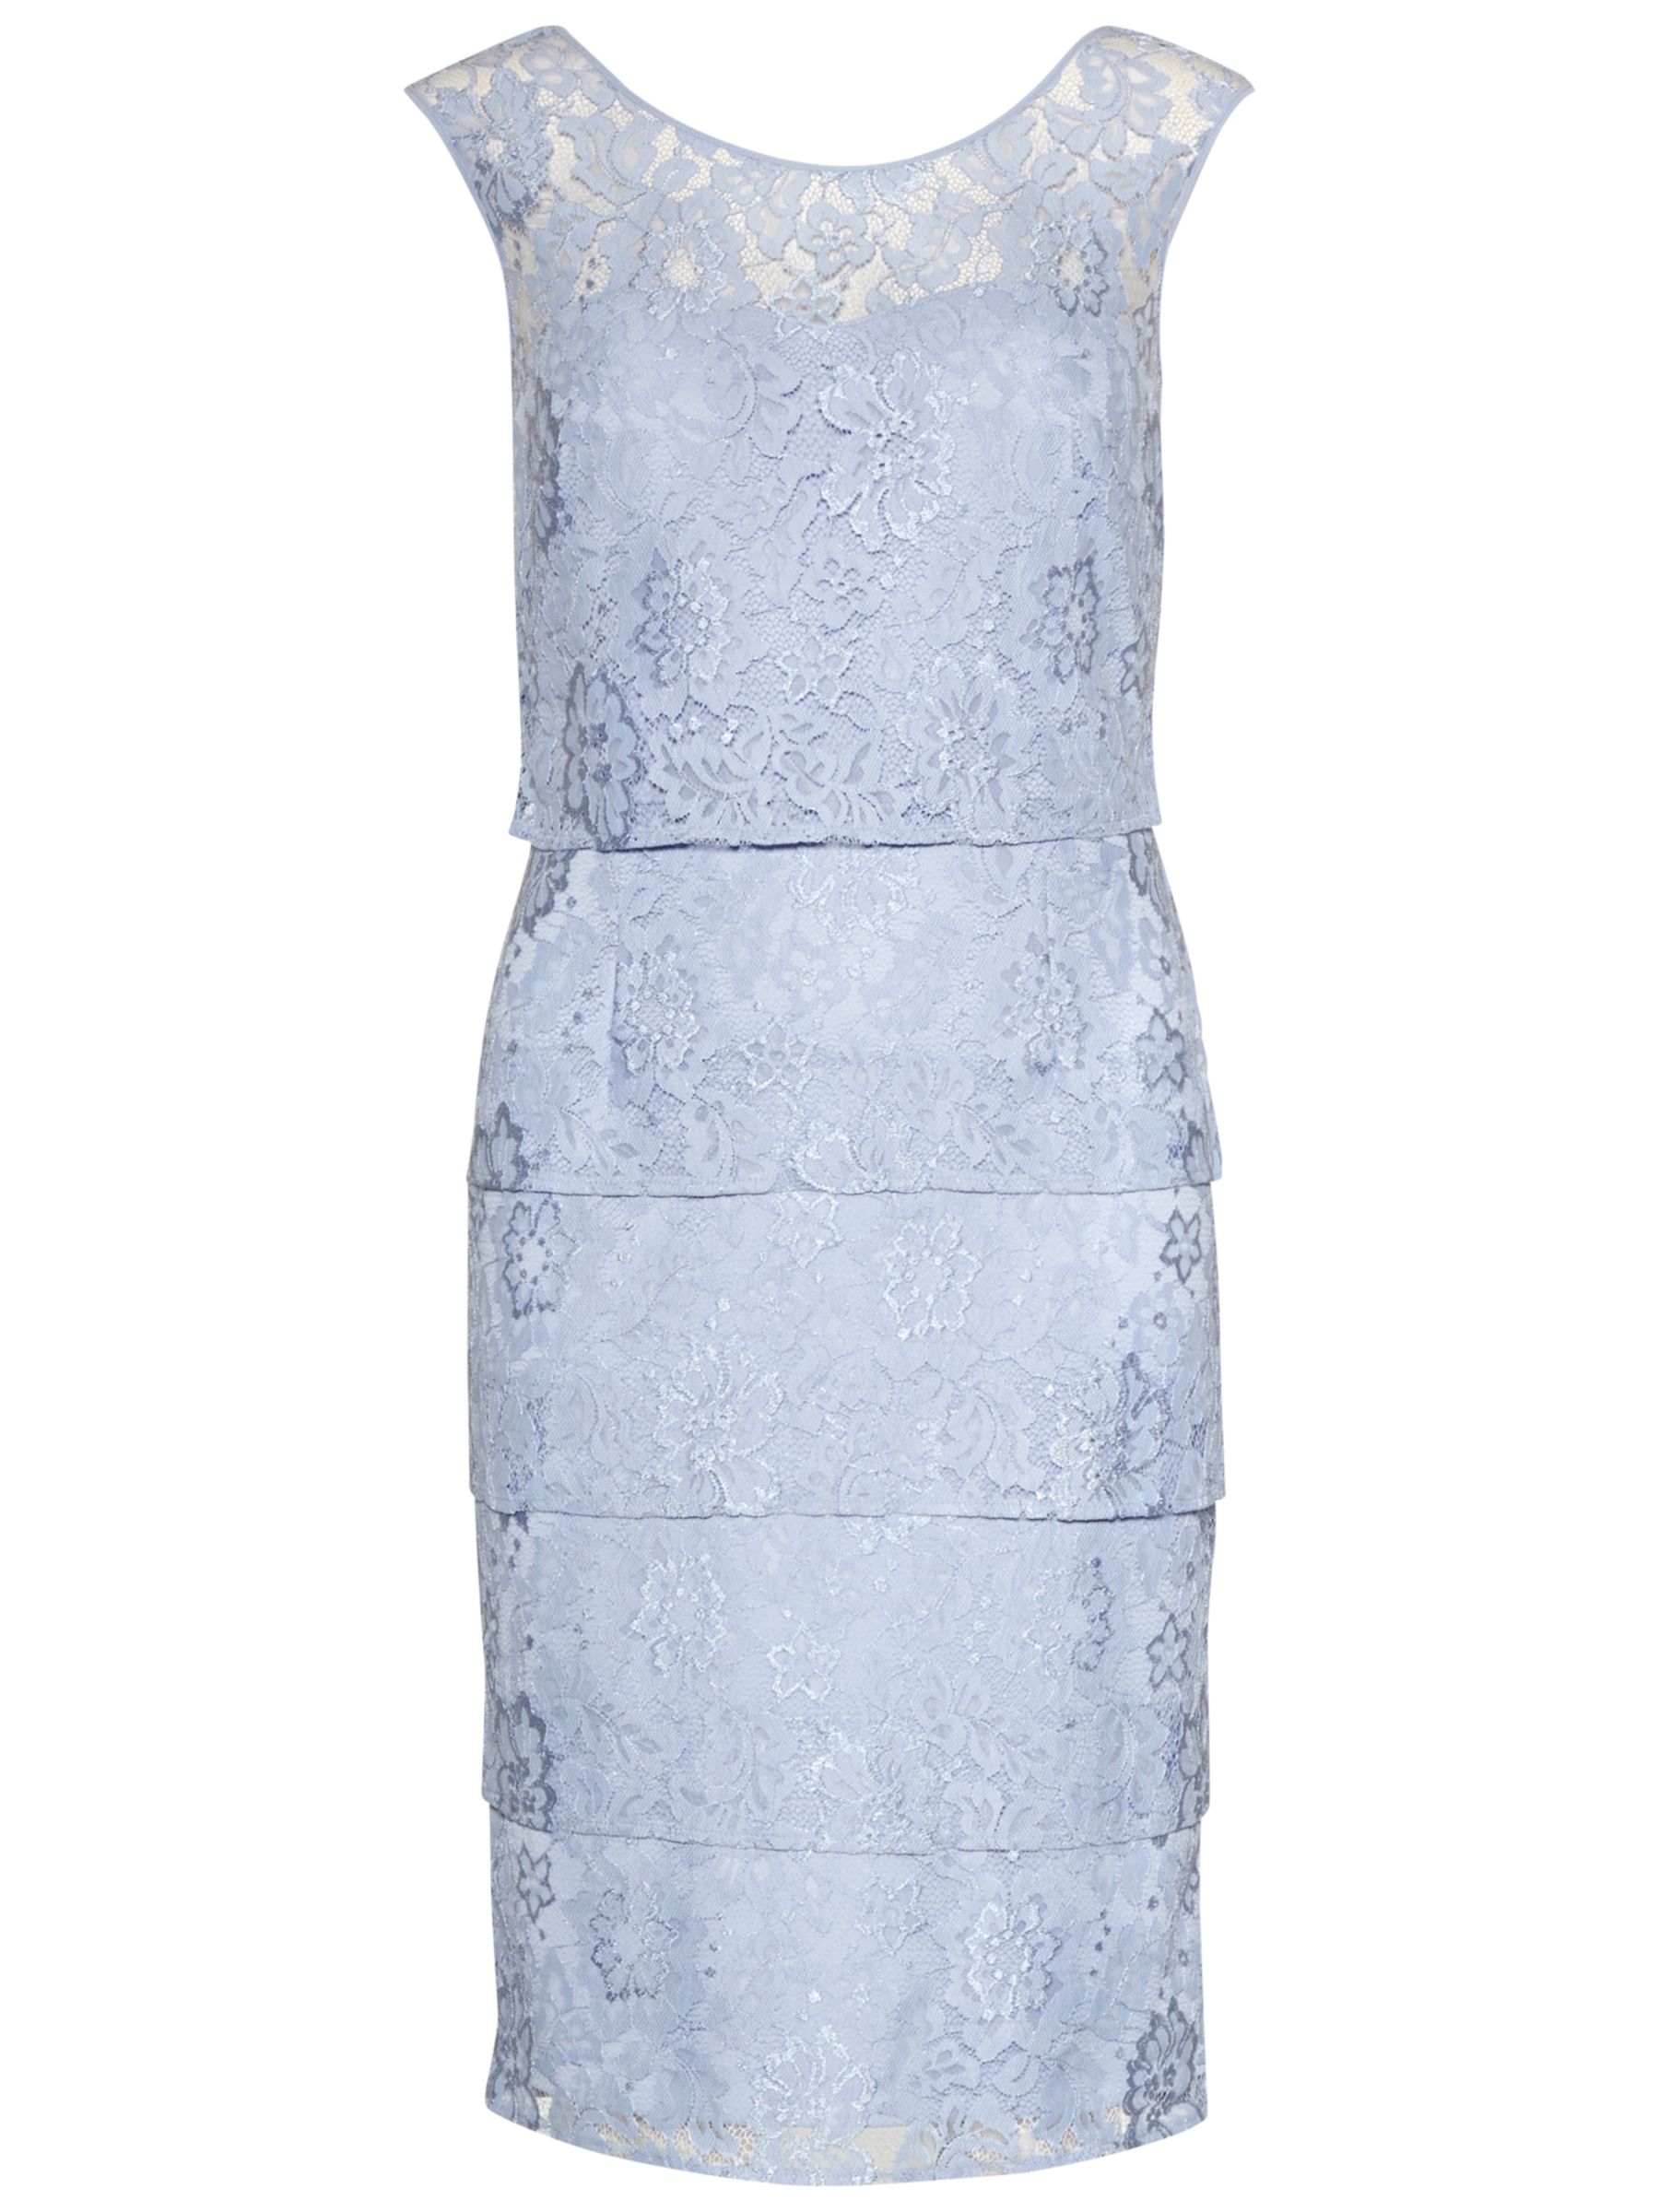 Gina Bacconi Layered Lace Panels Dress, Perri Blue